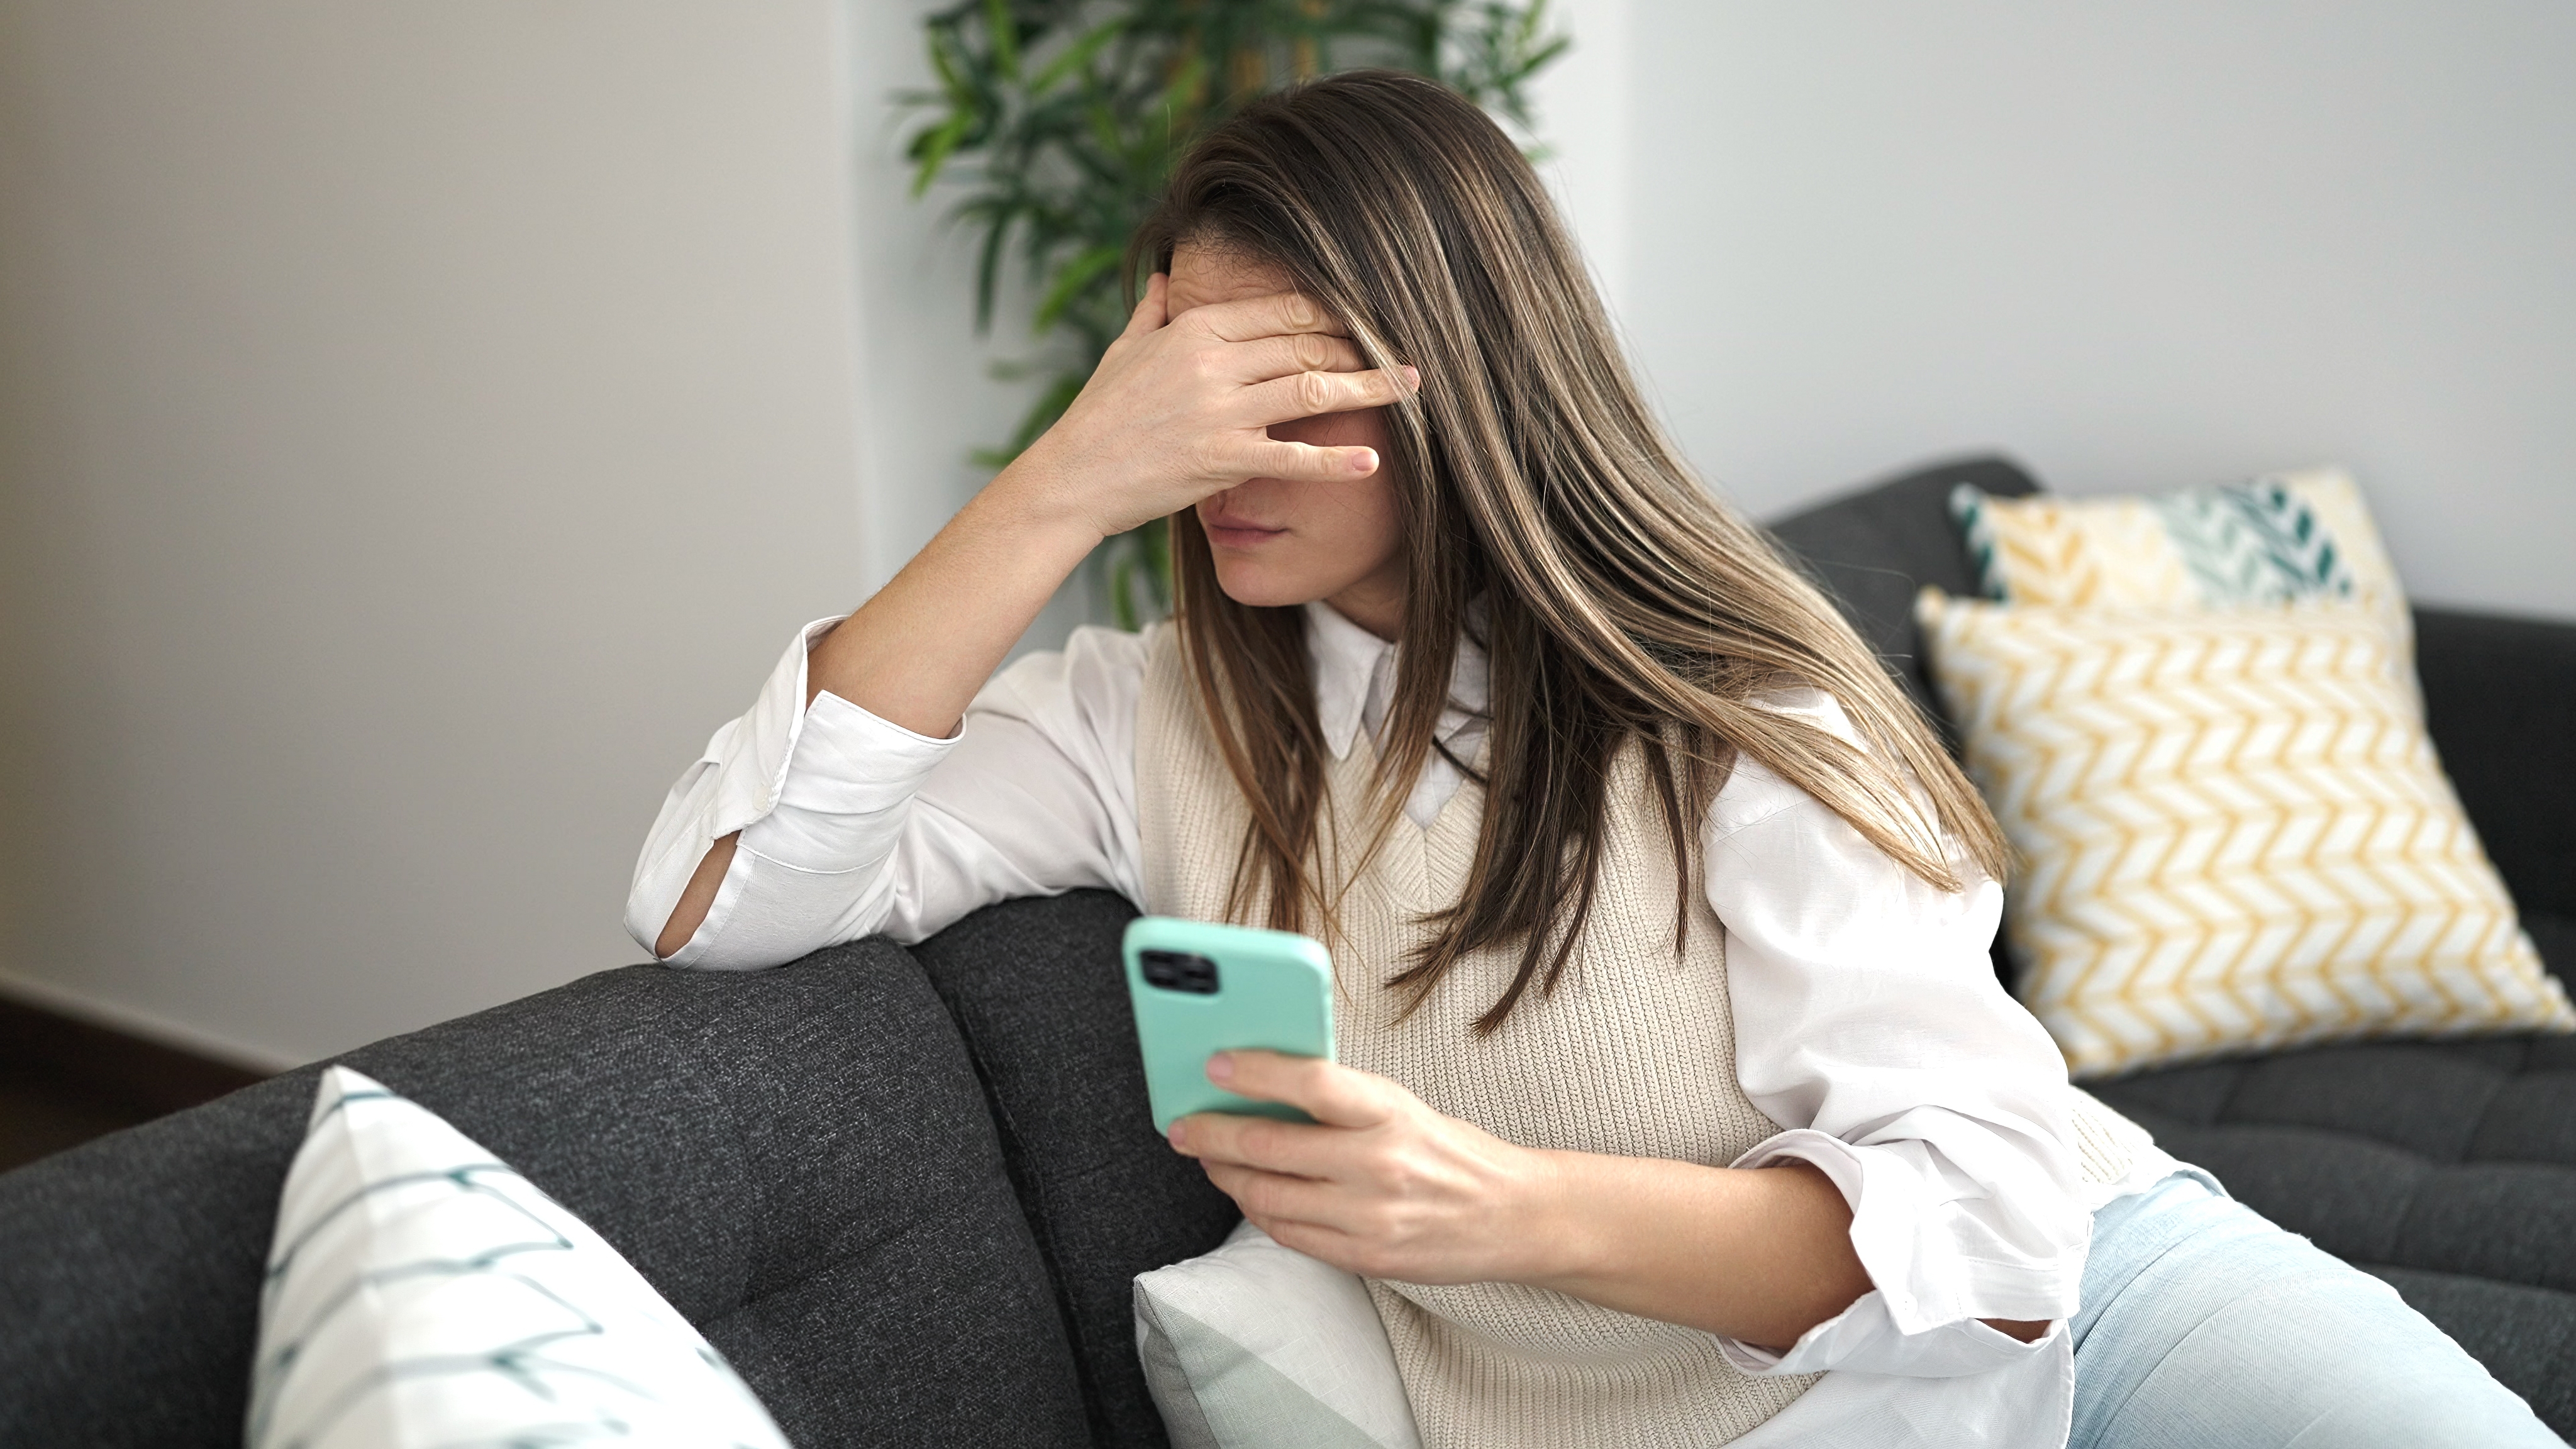 Une femme à l'air stressé alors qu'elle est au téléphone | Source : Shutterstock